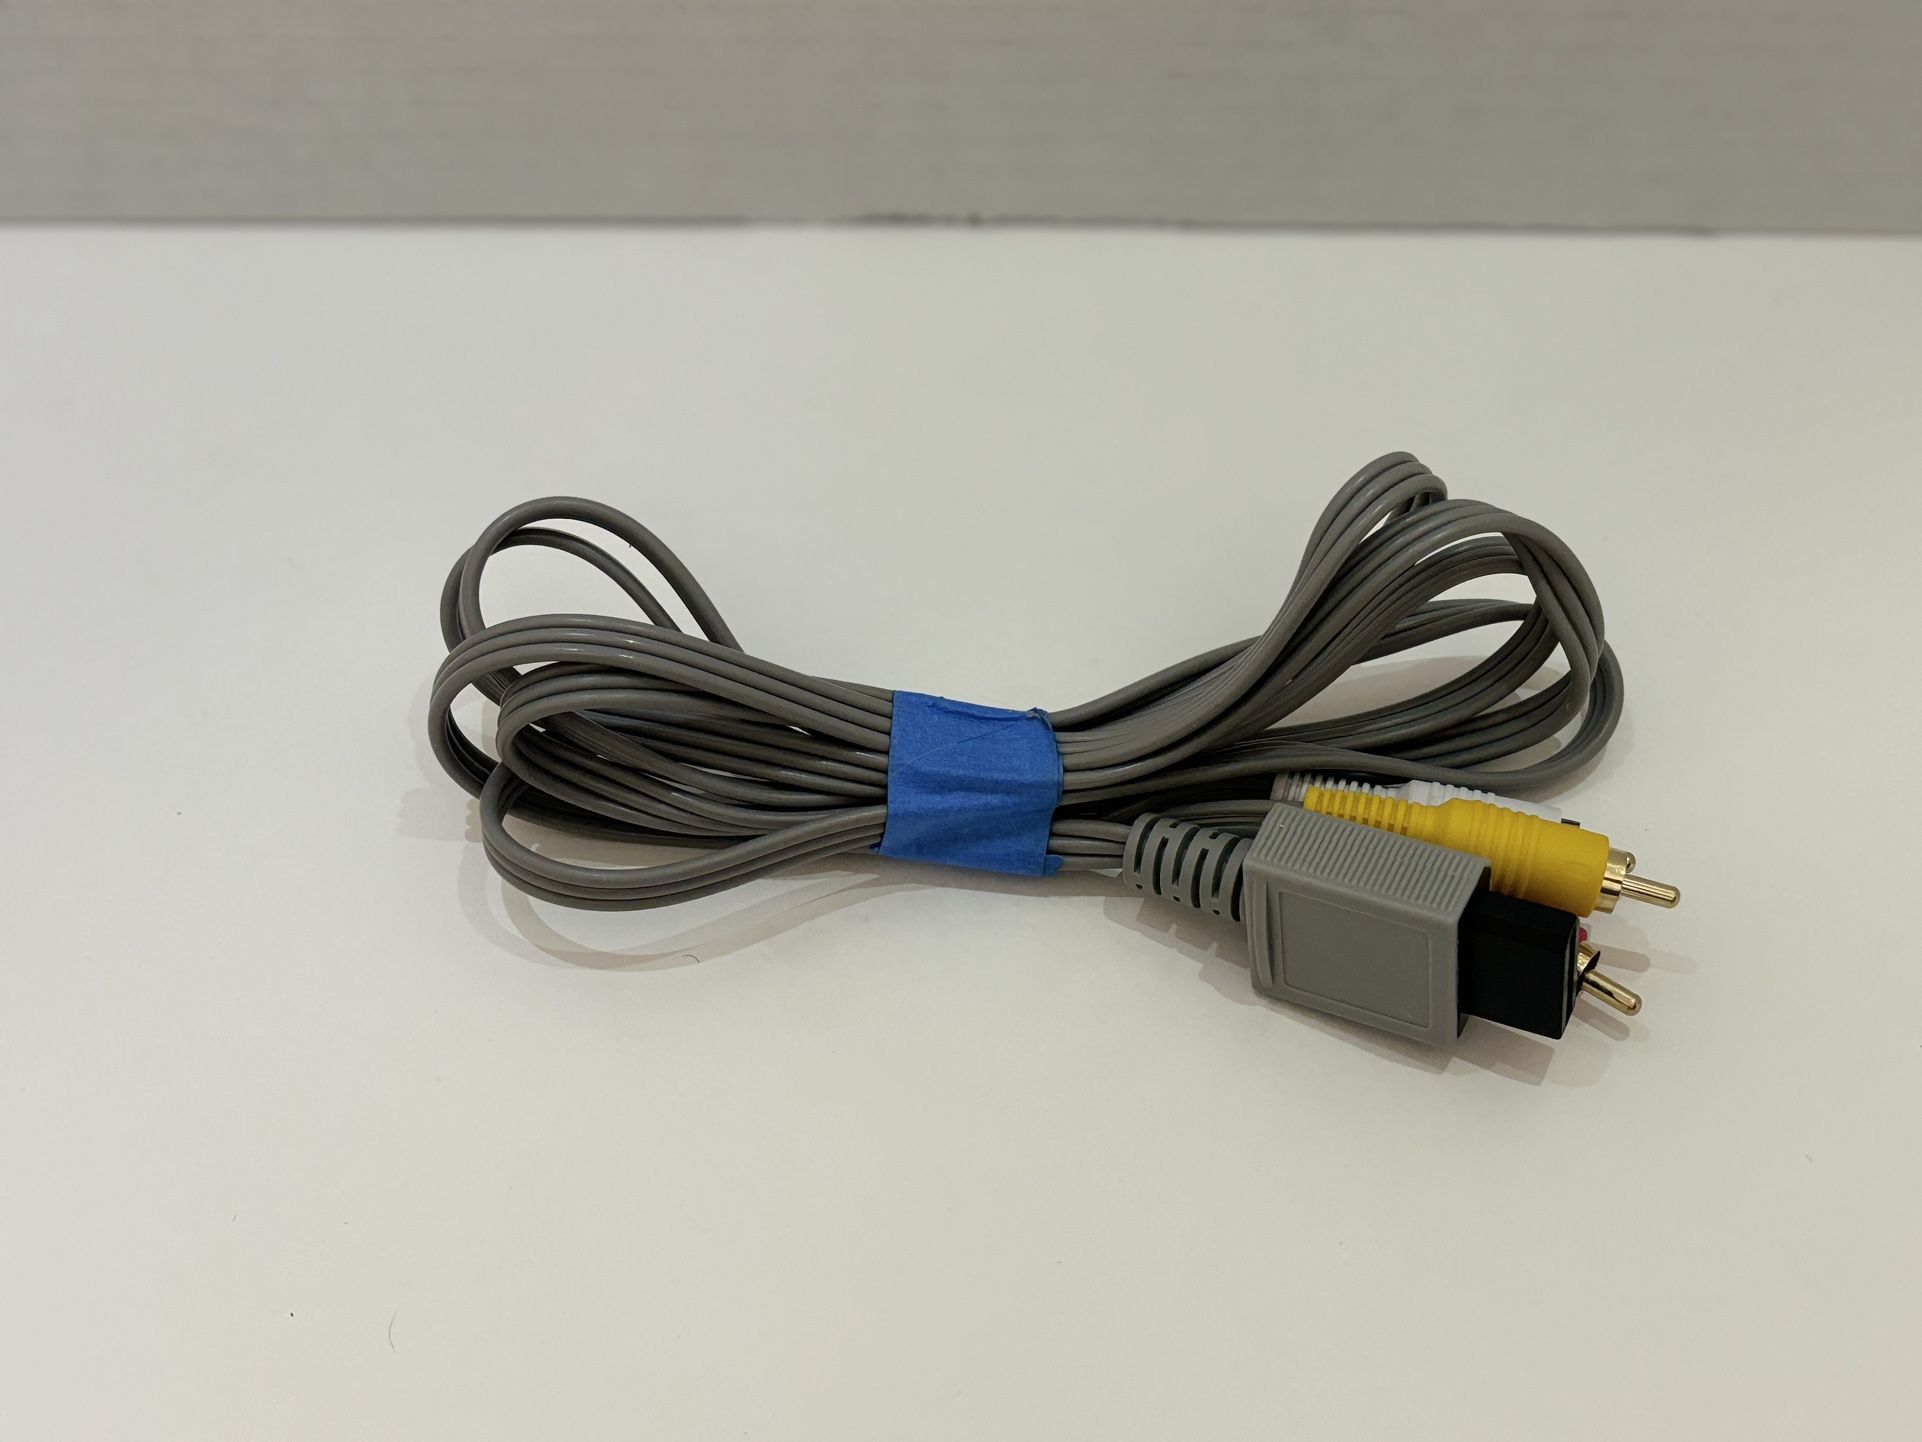 Official Nintendo Wii Audio Video (AV) Cable RVL-009 OEM Genuine